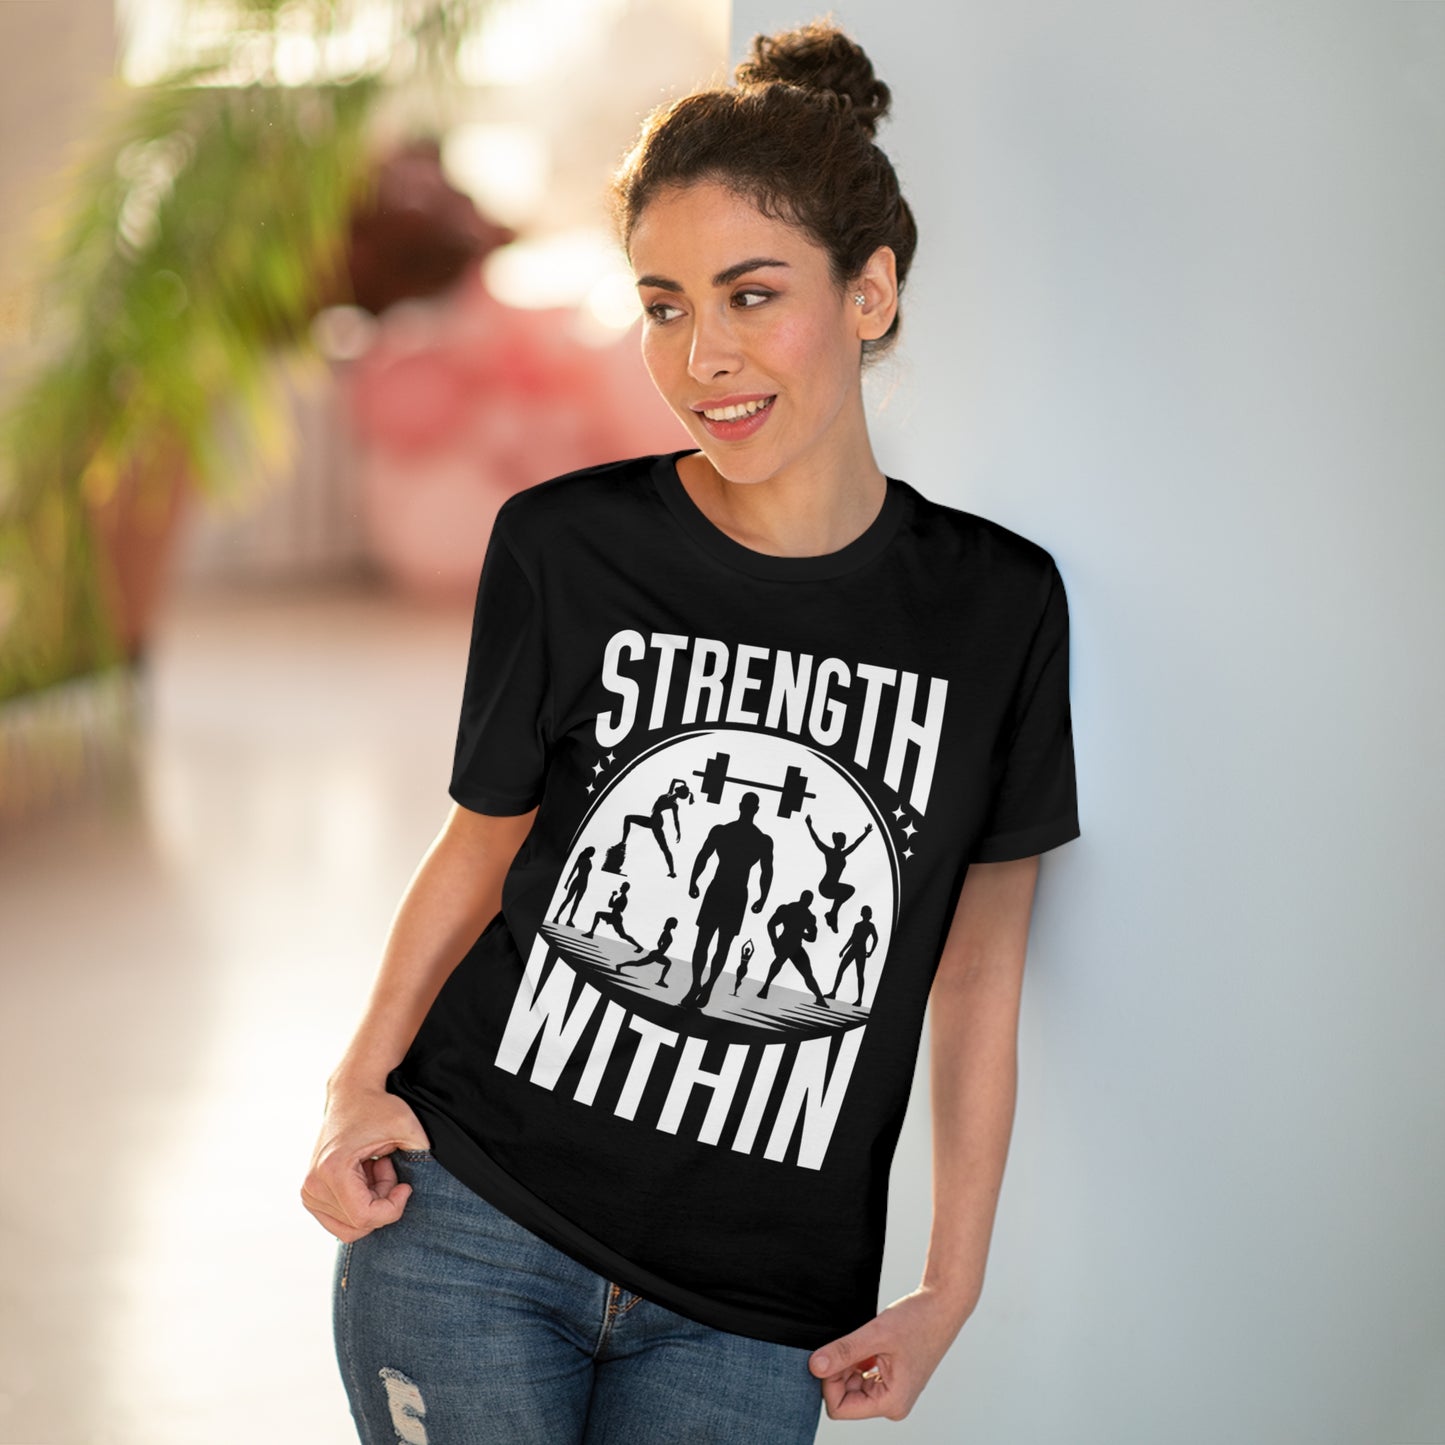 Inner Strength Fitness "STRENGTH WITHIN" T-shirt - Unisex